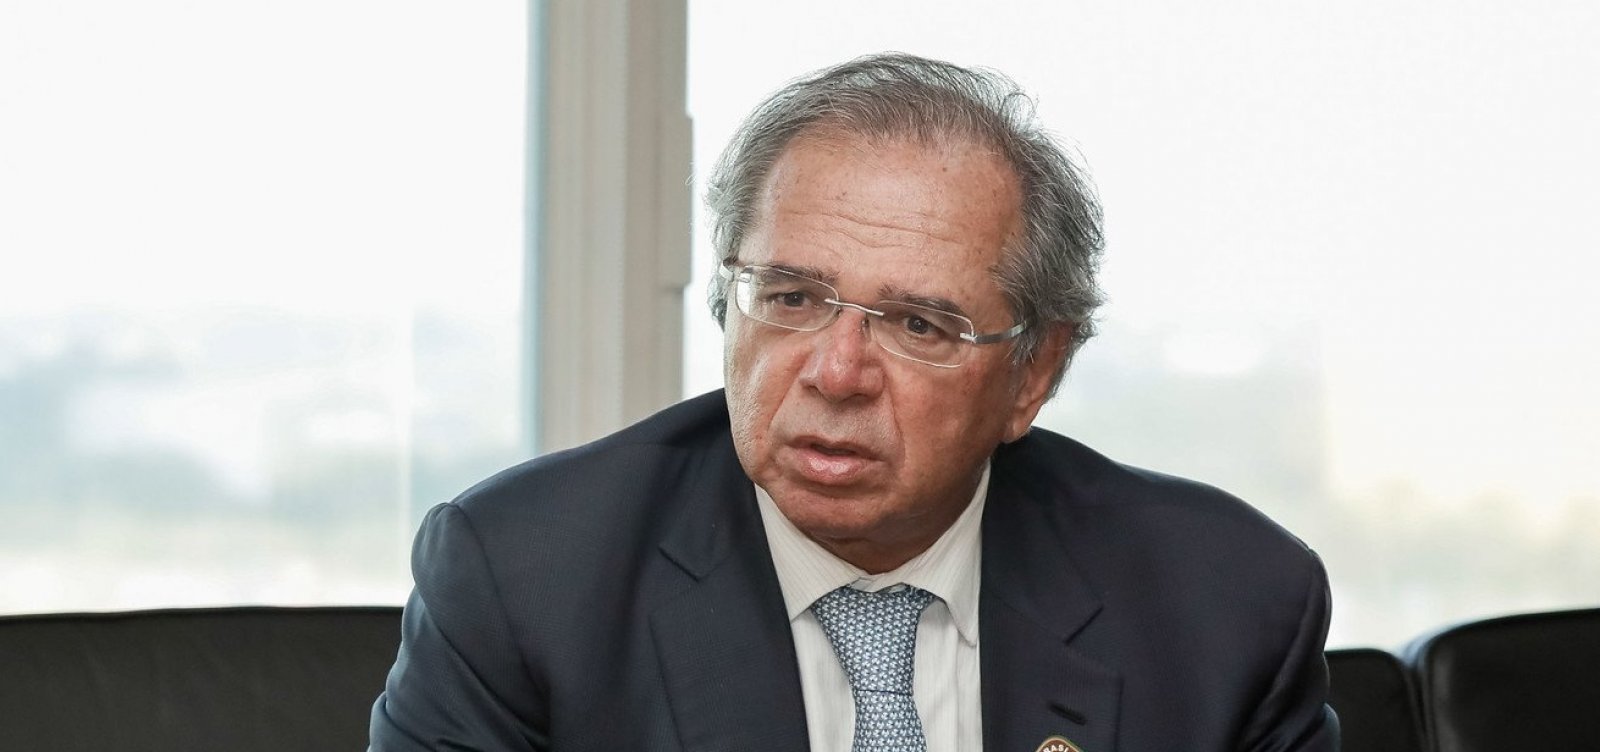 'Jamais esteve sob análise privatizar o SUS, seria uma insanidade falar isso', diz Guedes